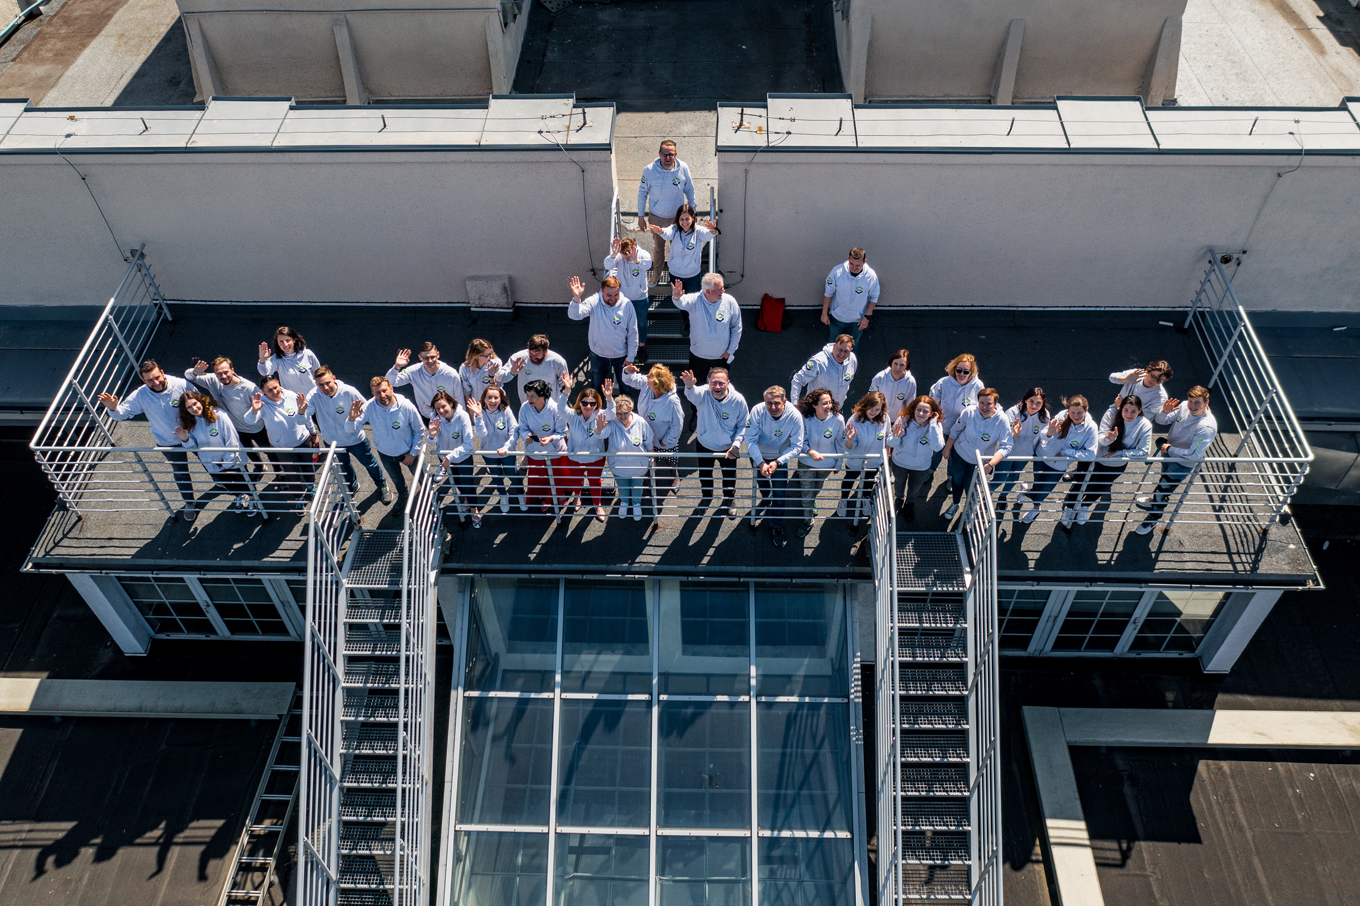 Pracownicy WILiGZ stoją na dachu budynku ubrani w jednolite szare bluzy wydziałowe i machają ręką na powitanie.